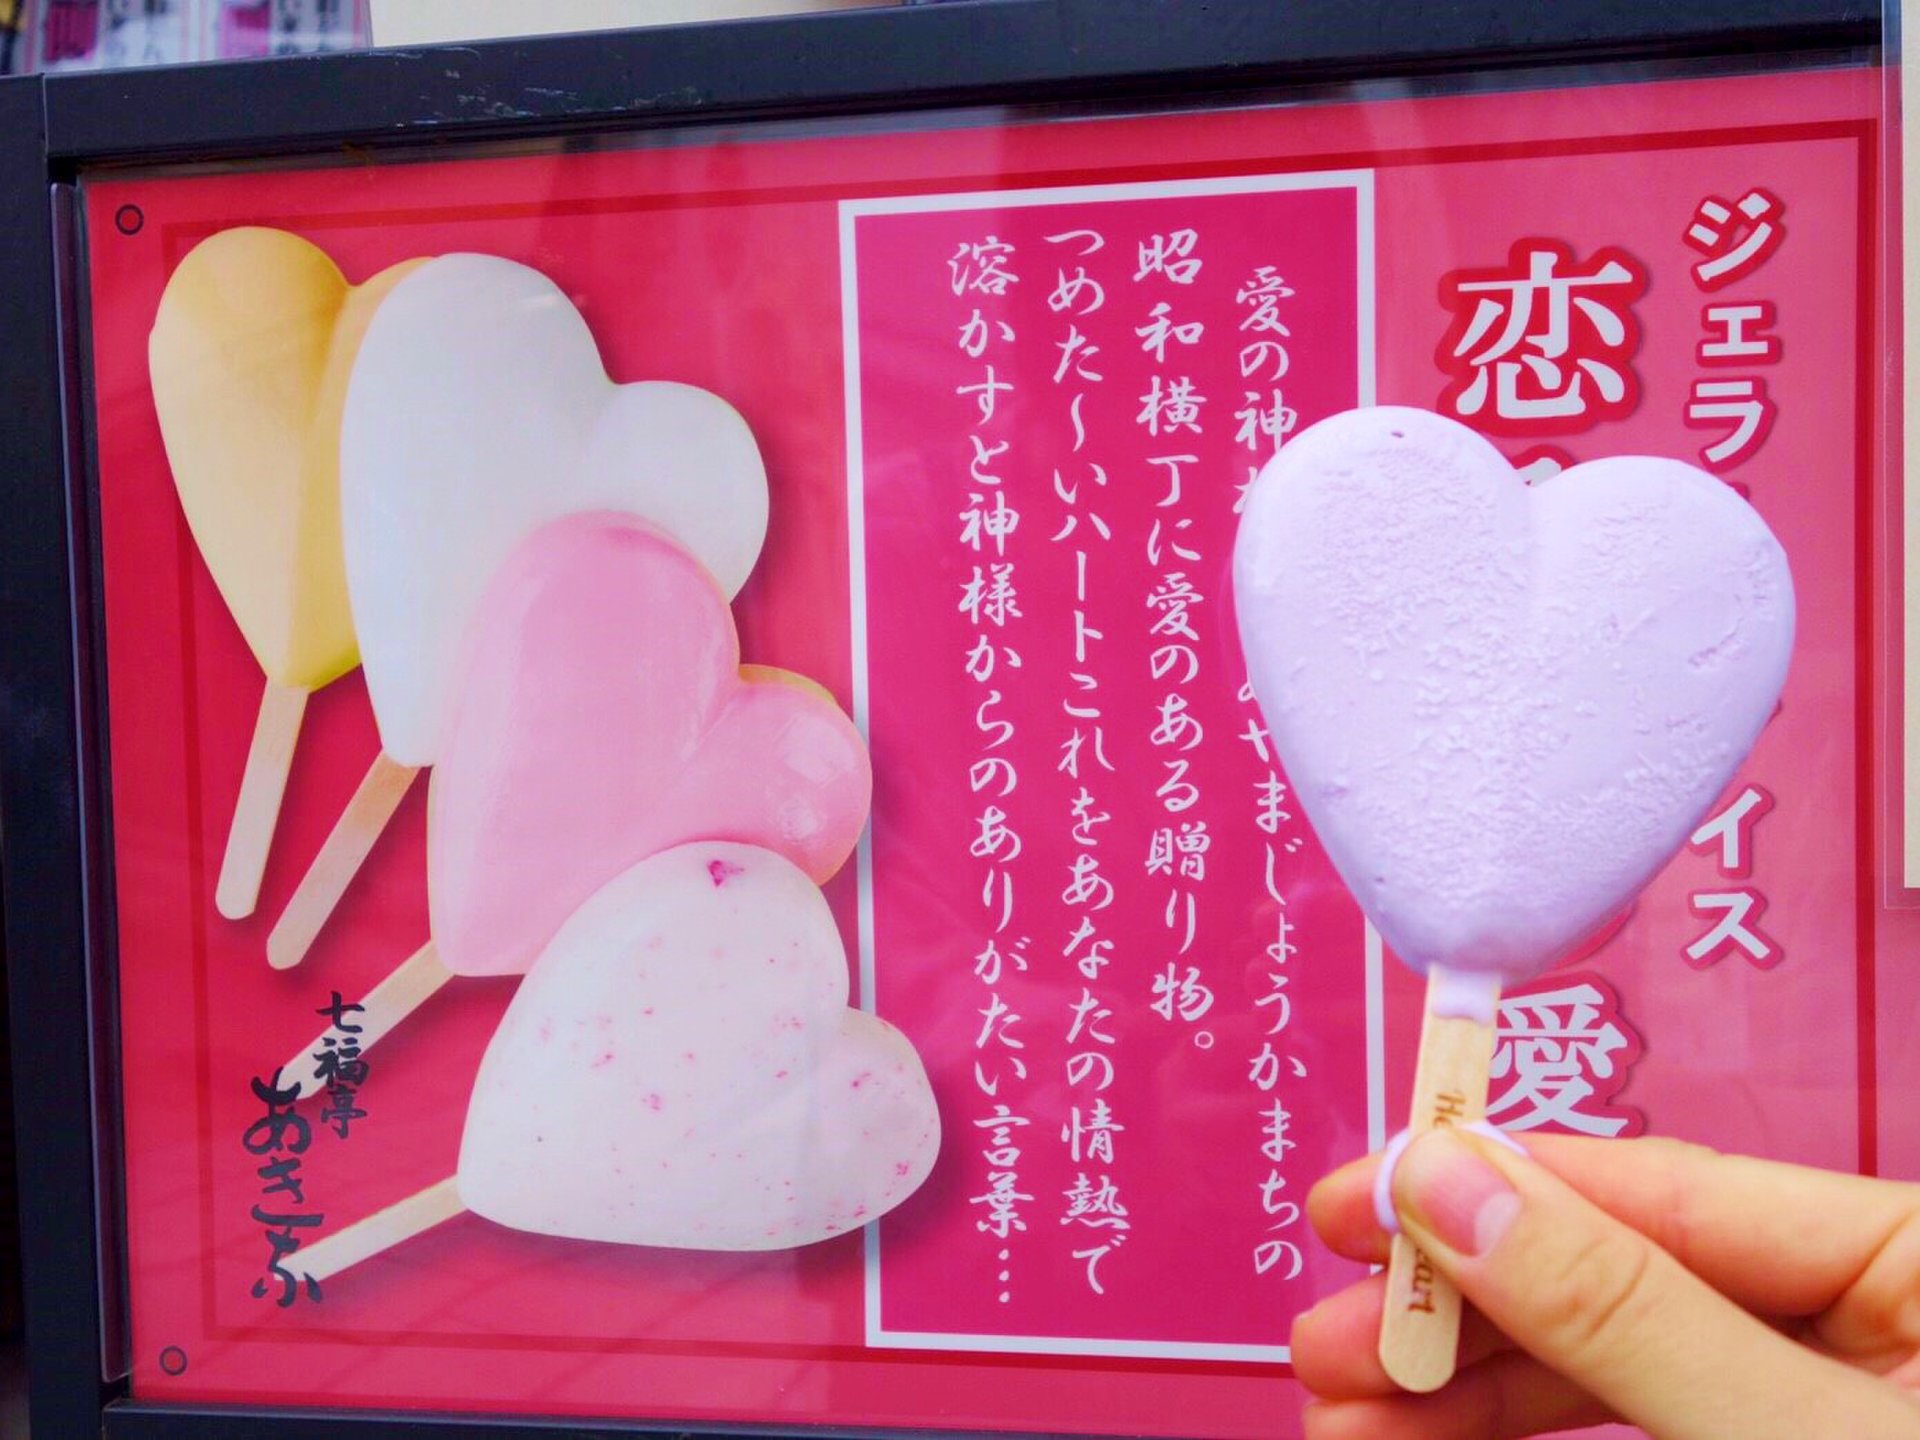 【犬山城下町】昭和横丁でかわいすぎるお団子とアイス「恋小町だんご」「恋みくじ愛す」をご紹介♪